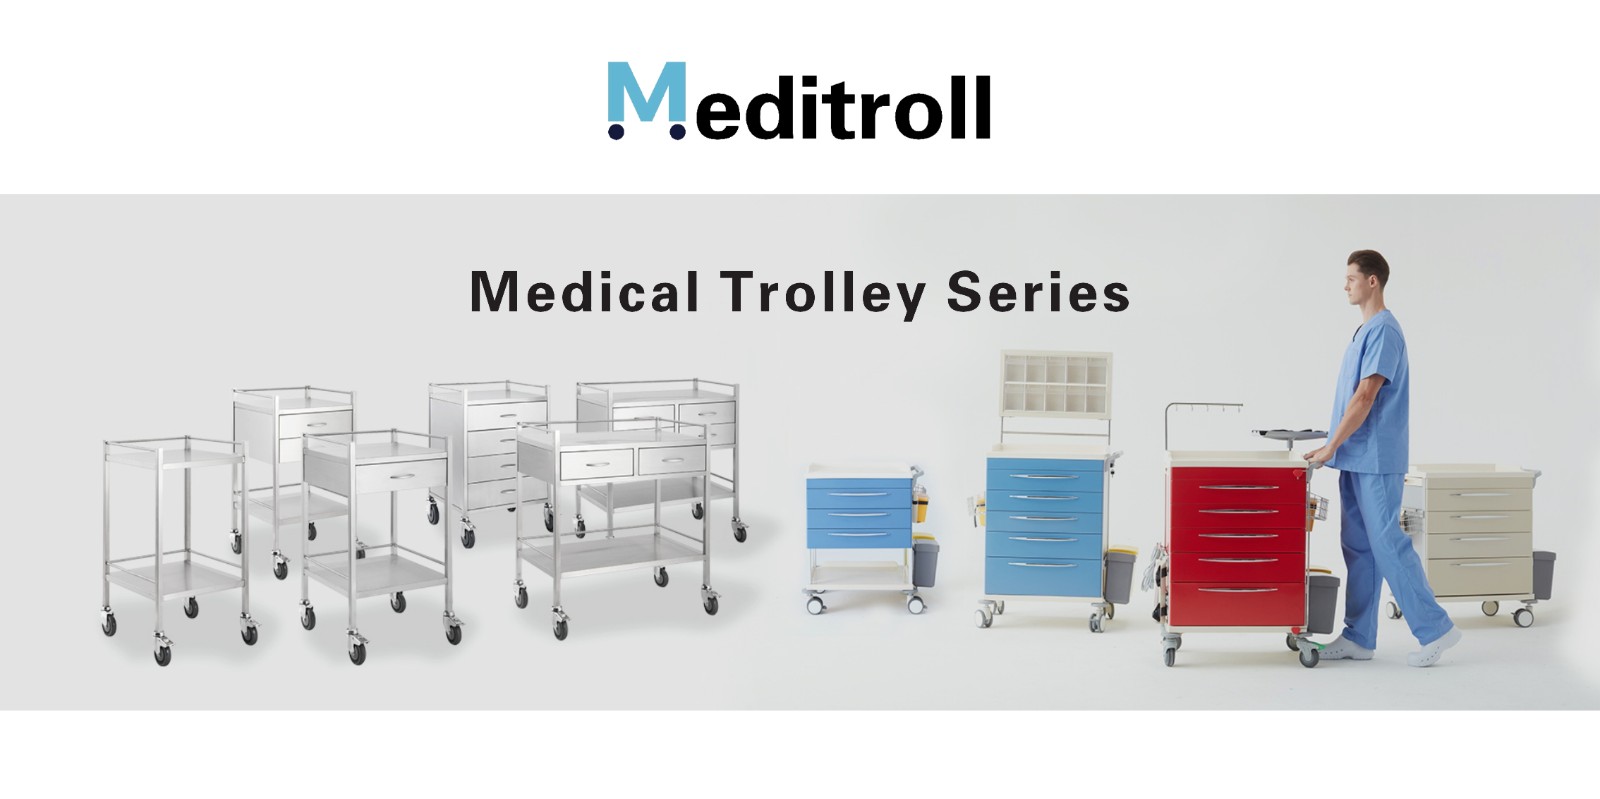 Treatment trolley